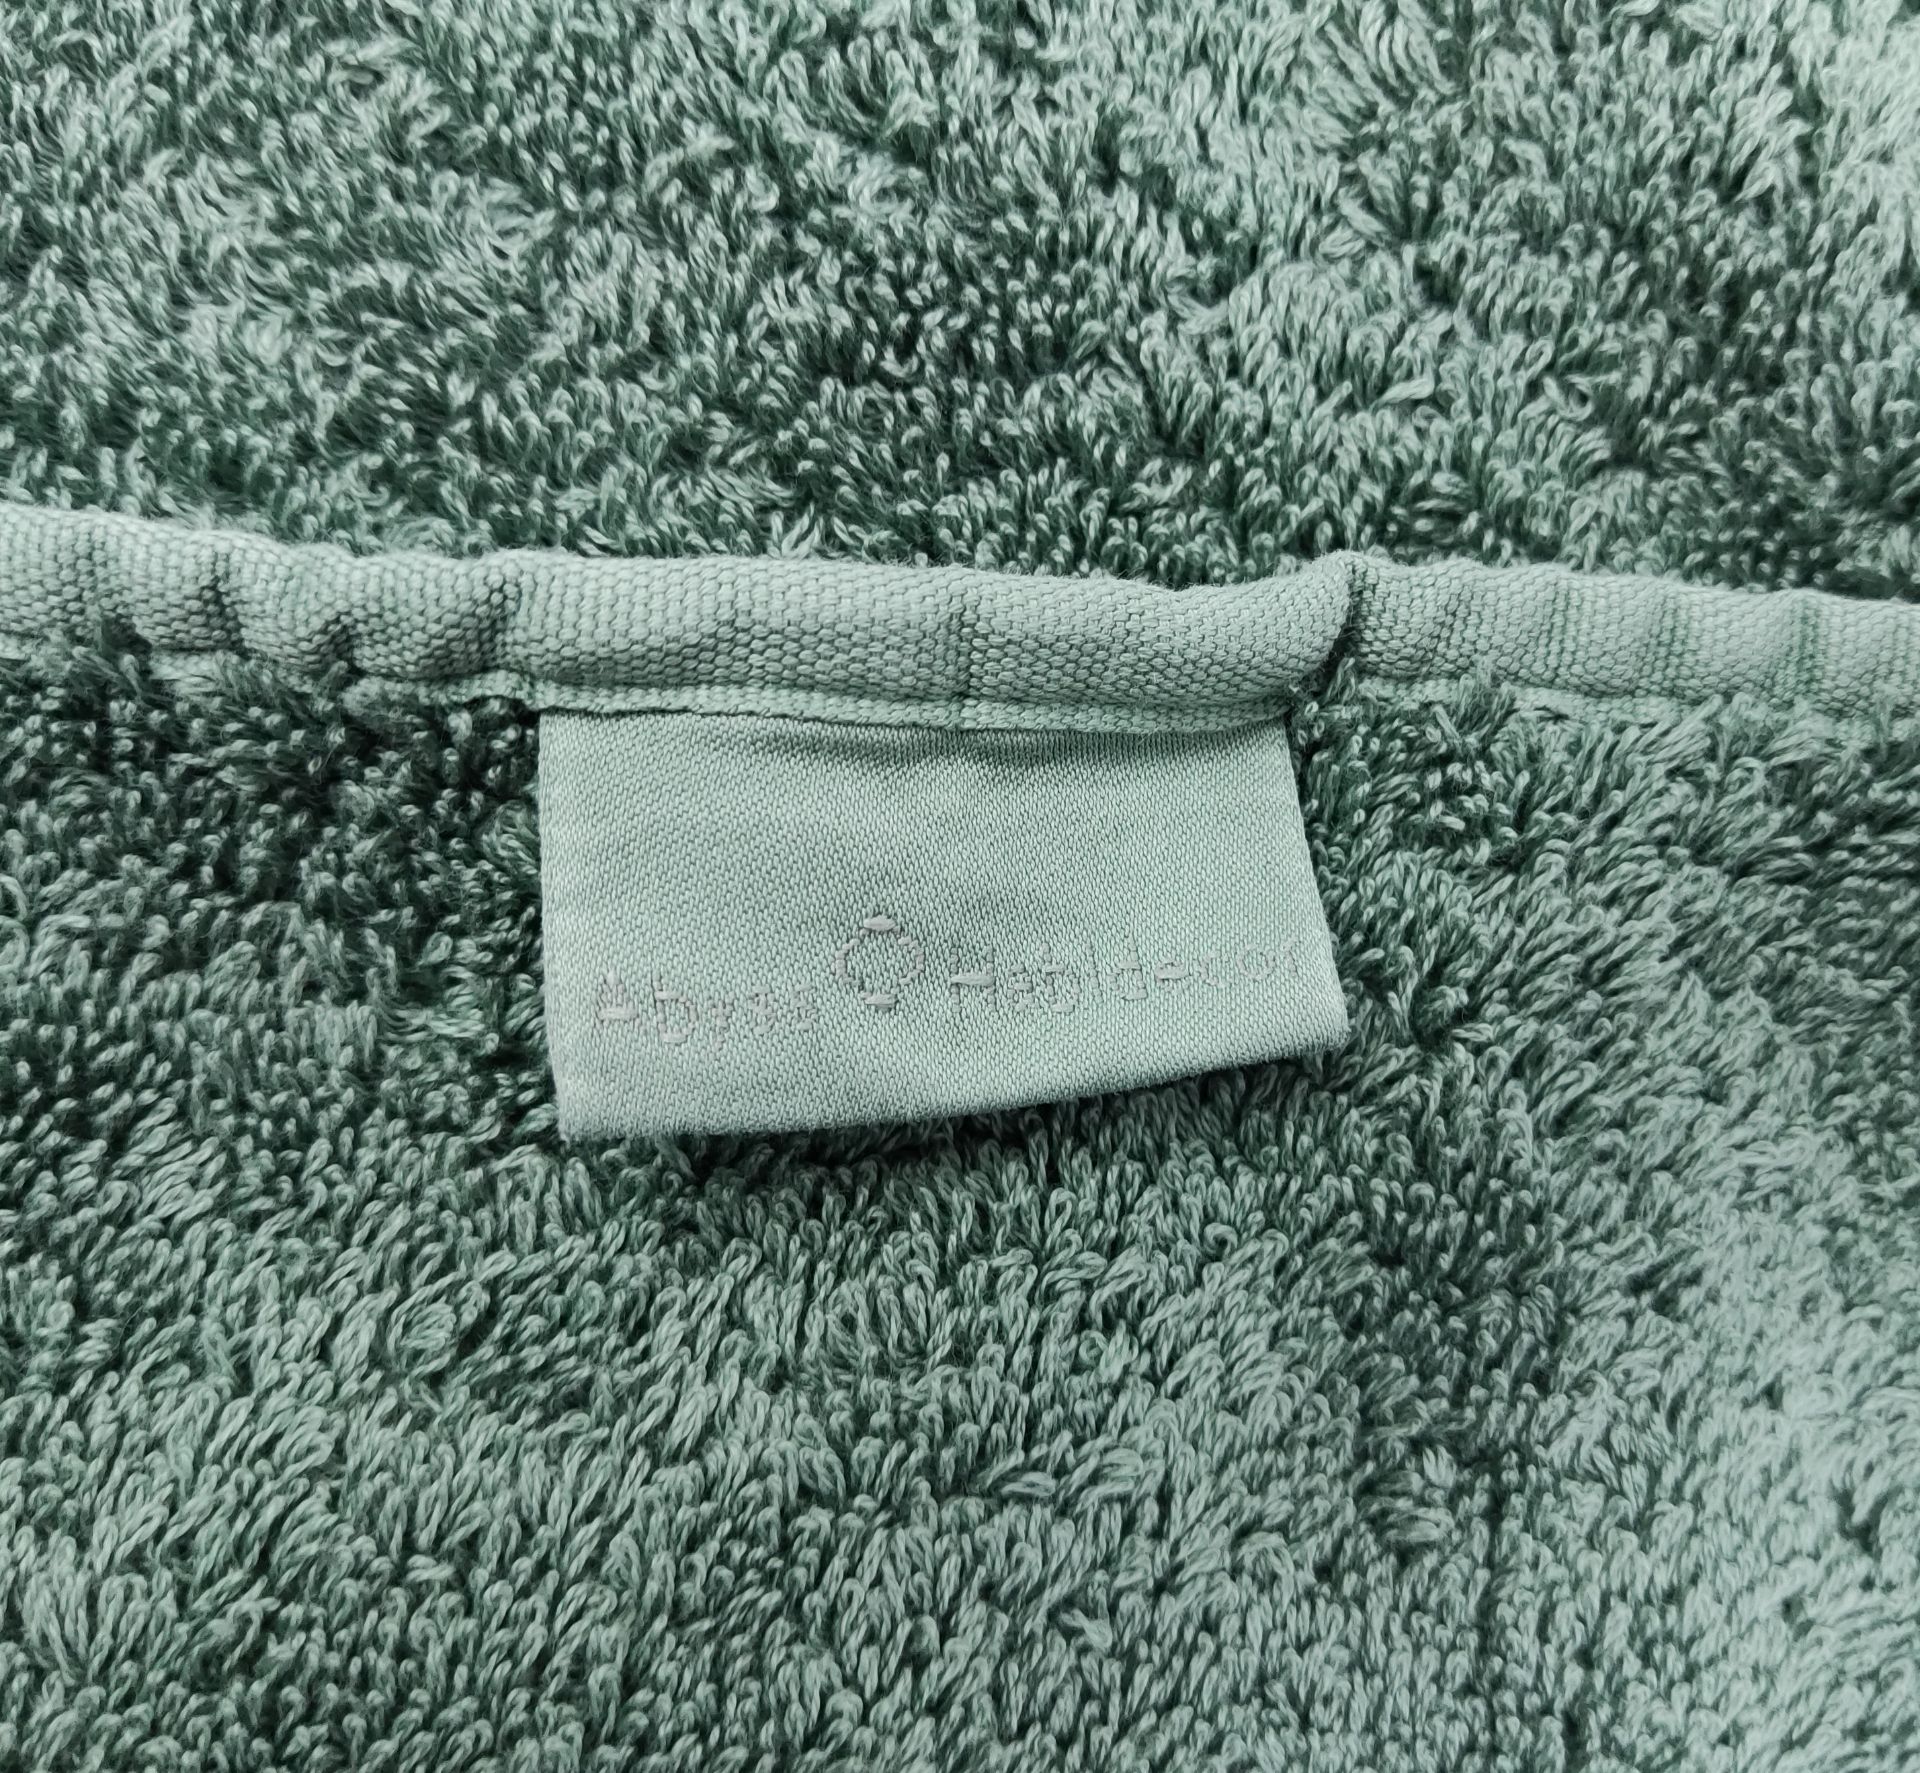 1 x ABYSS &amp; HABIDECOR Super Pile Egyptian Cotton Bath Towel 70cm x 140cm - Original RRP £93.00 - Image 3 of 6